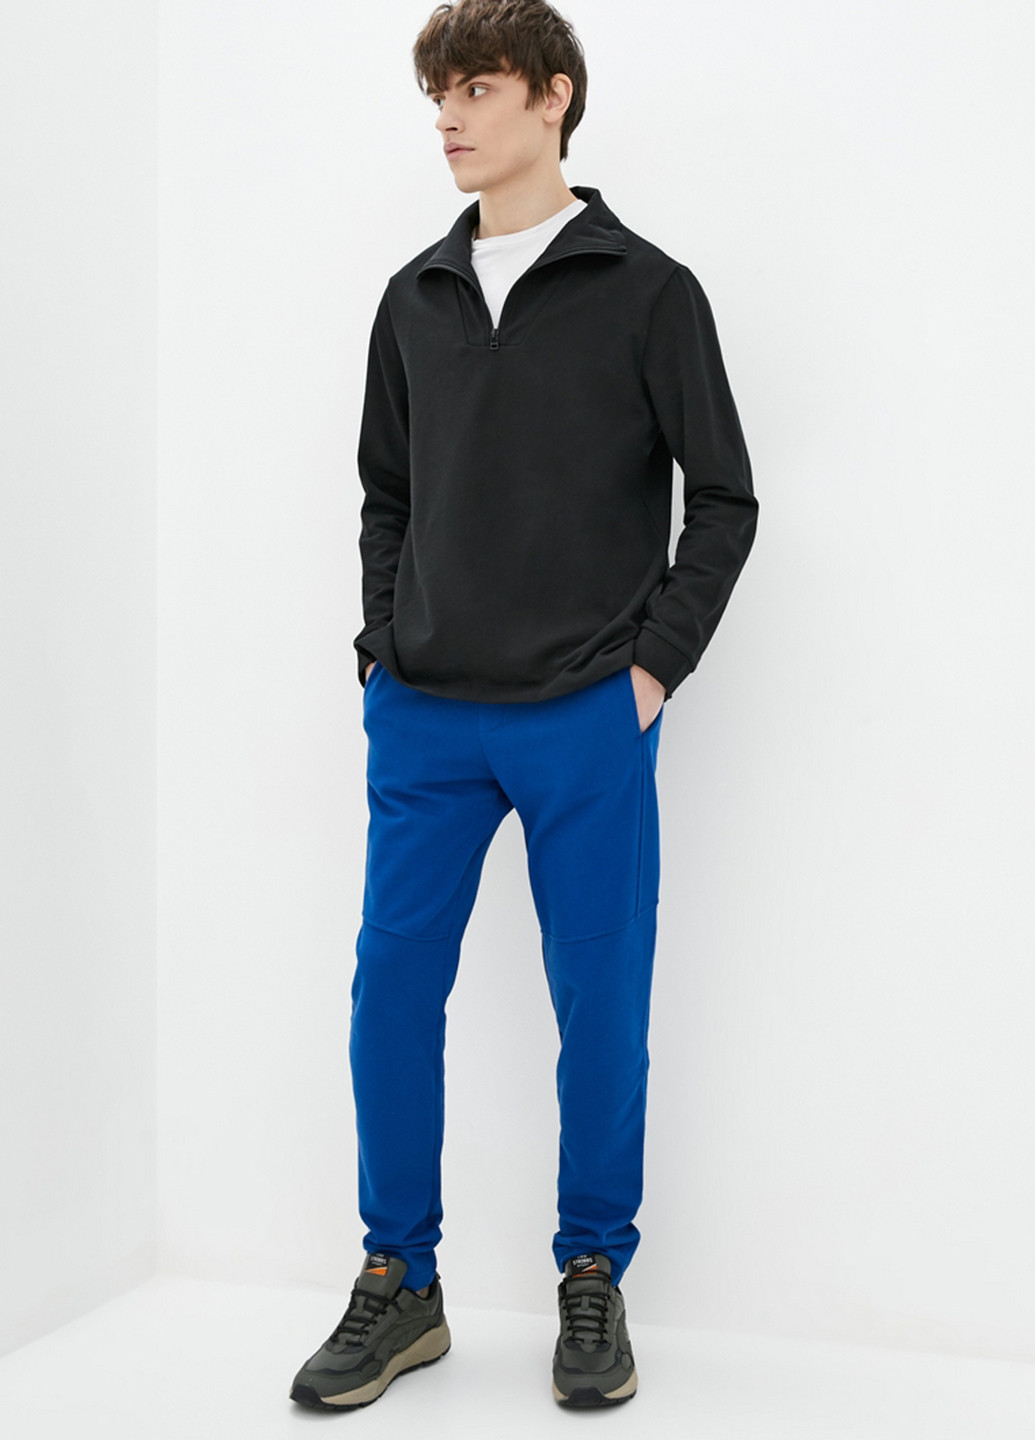 Синие спортивные демисезонные джоггеры брюки Promin